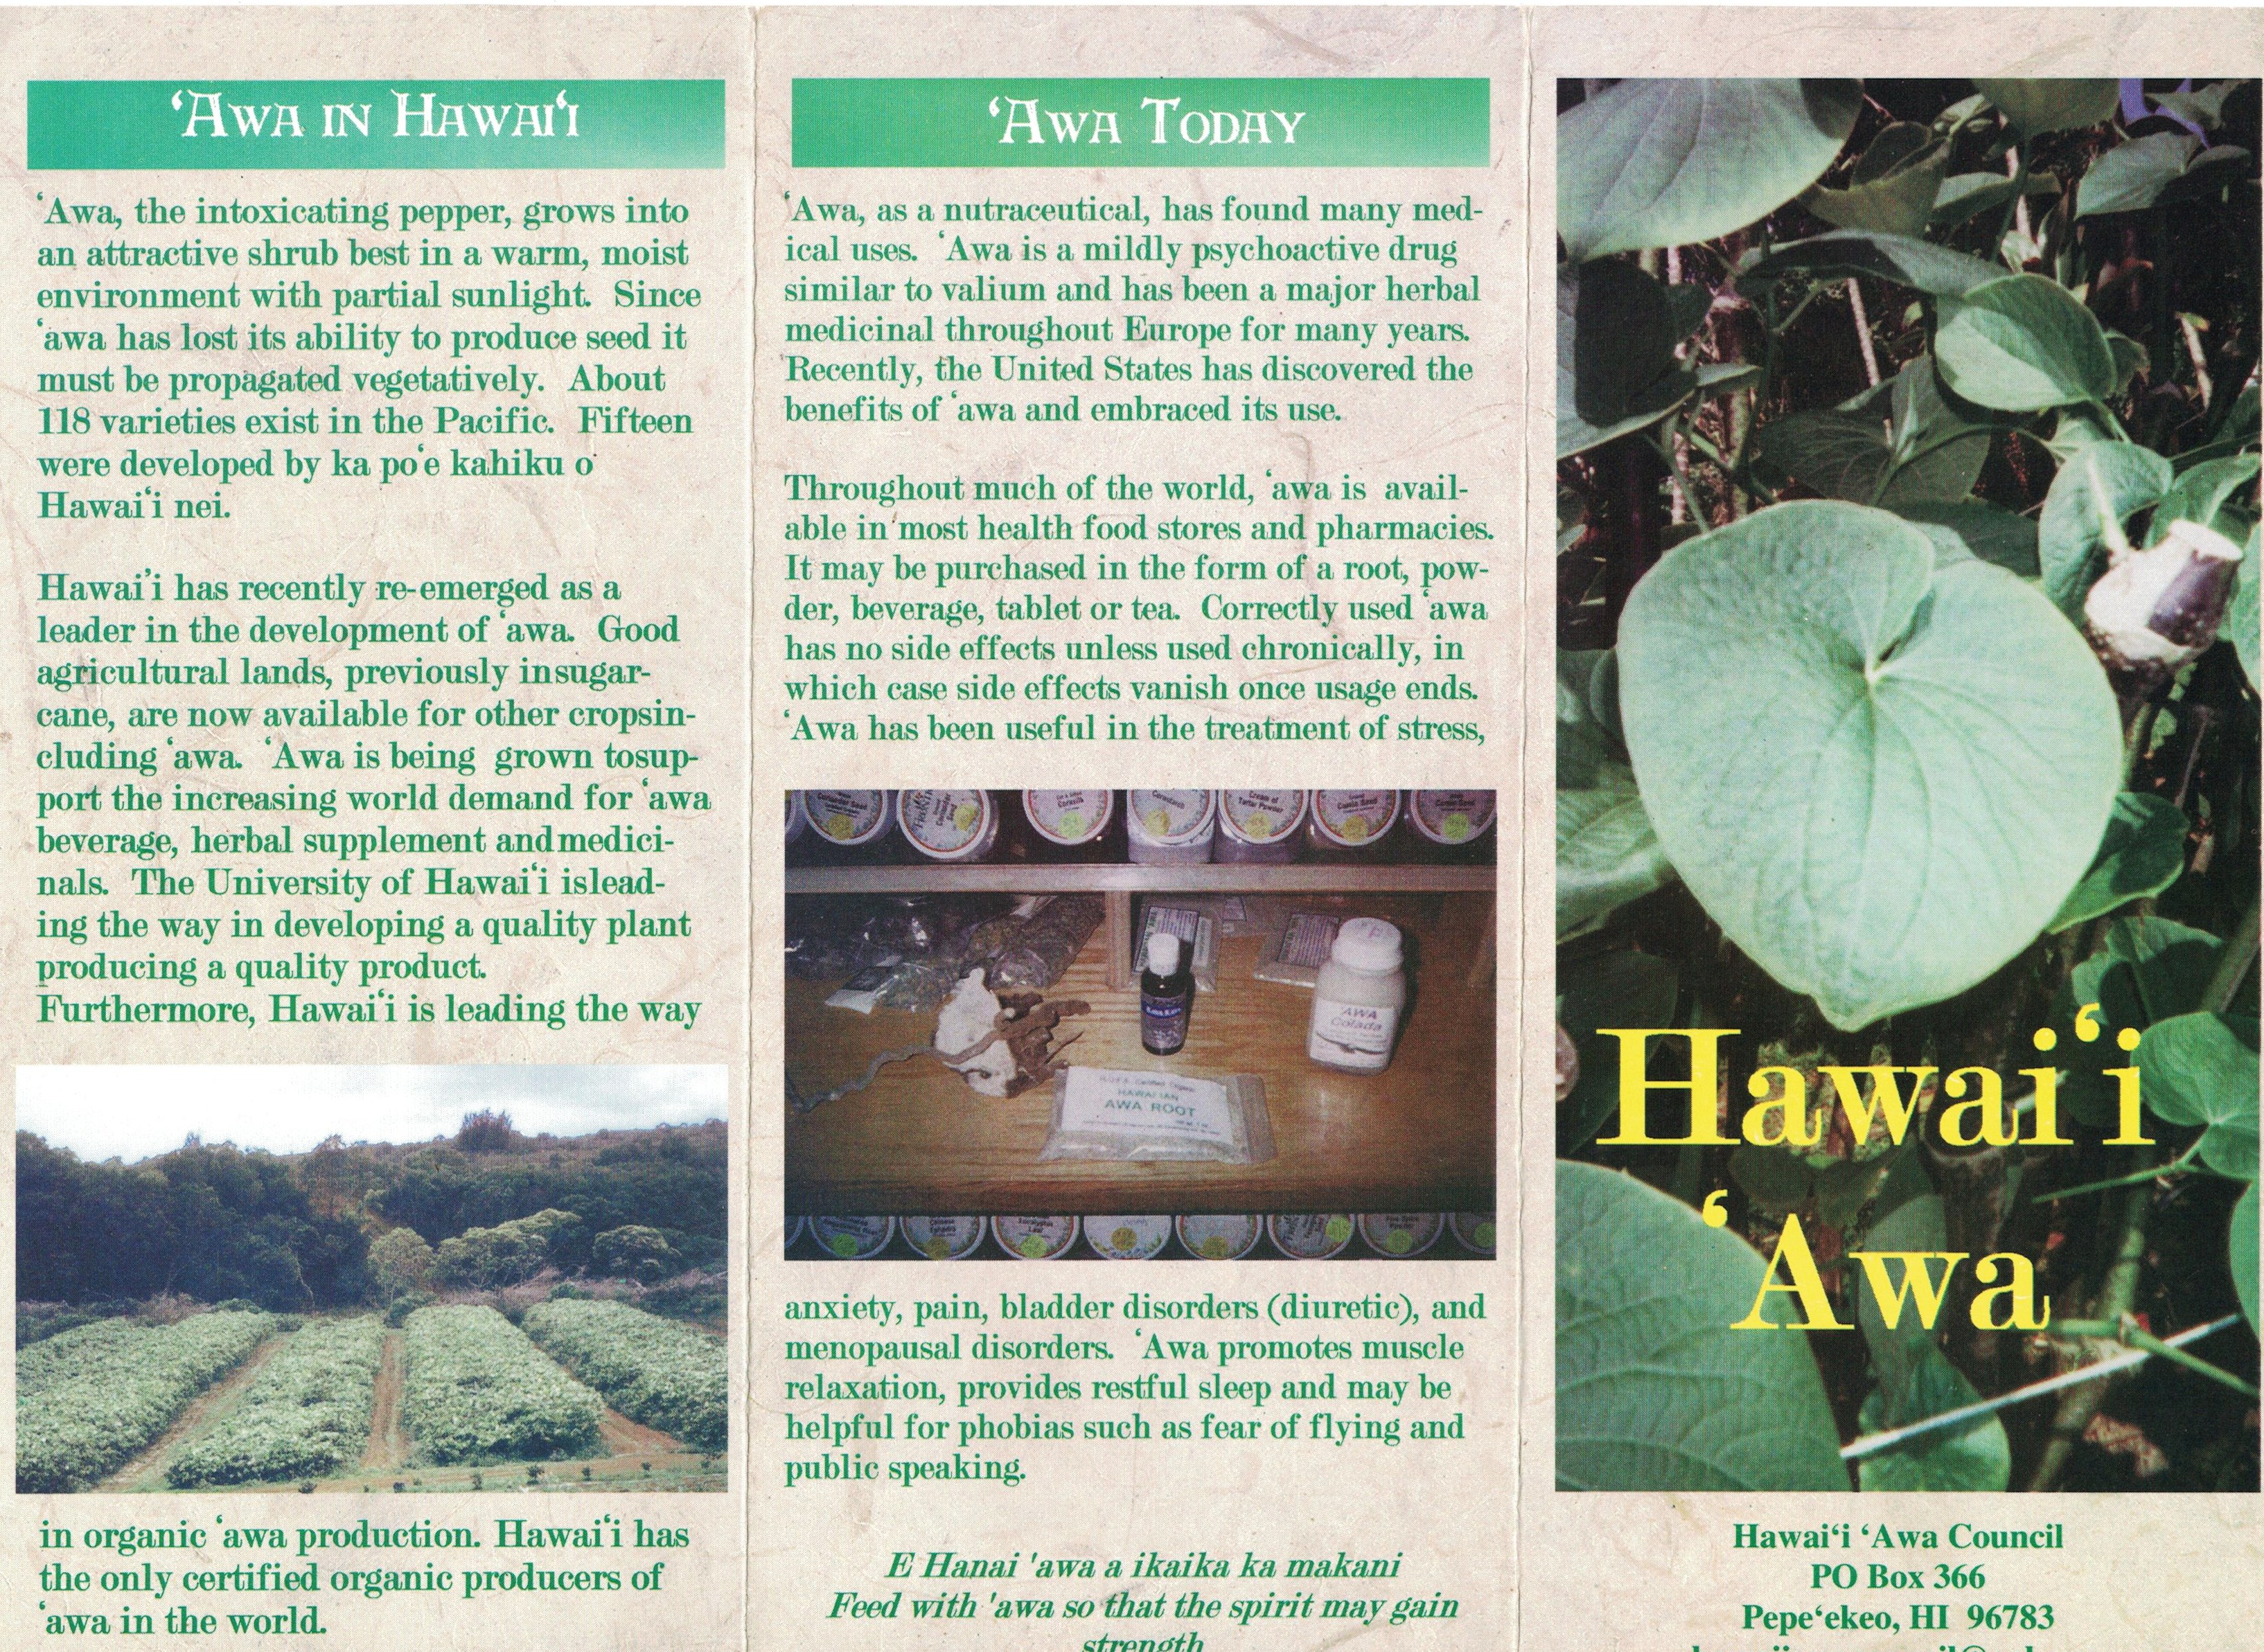 Hawaii Awa Council 1 001.jpg